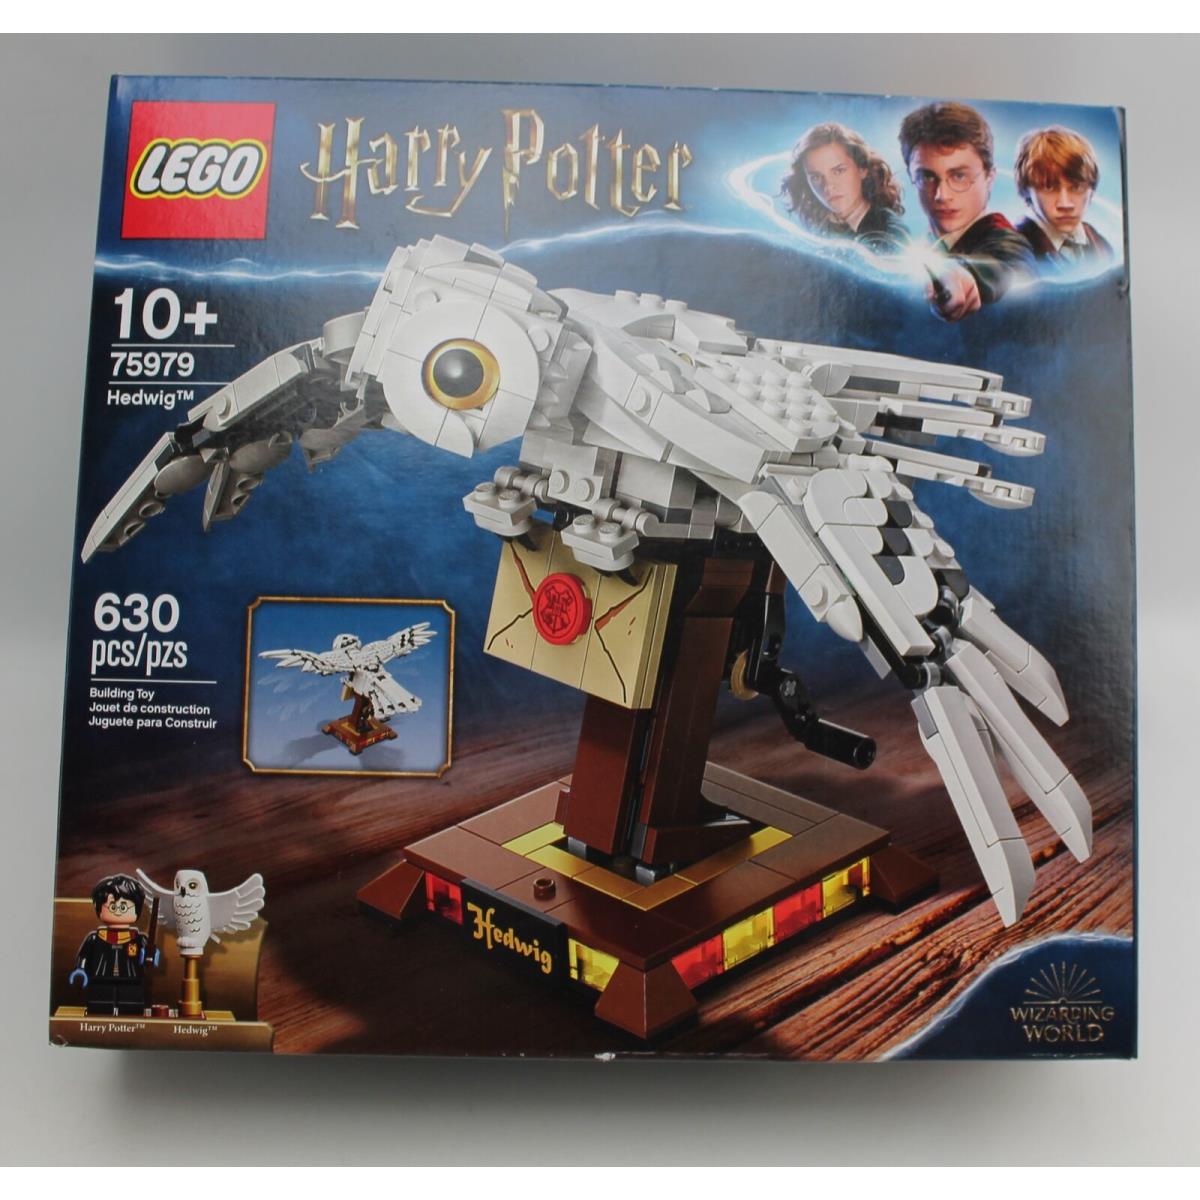 Lego Harry Potter Hedwig Set 75979